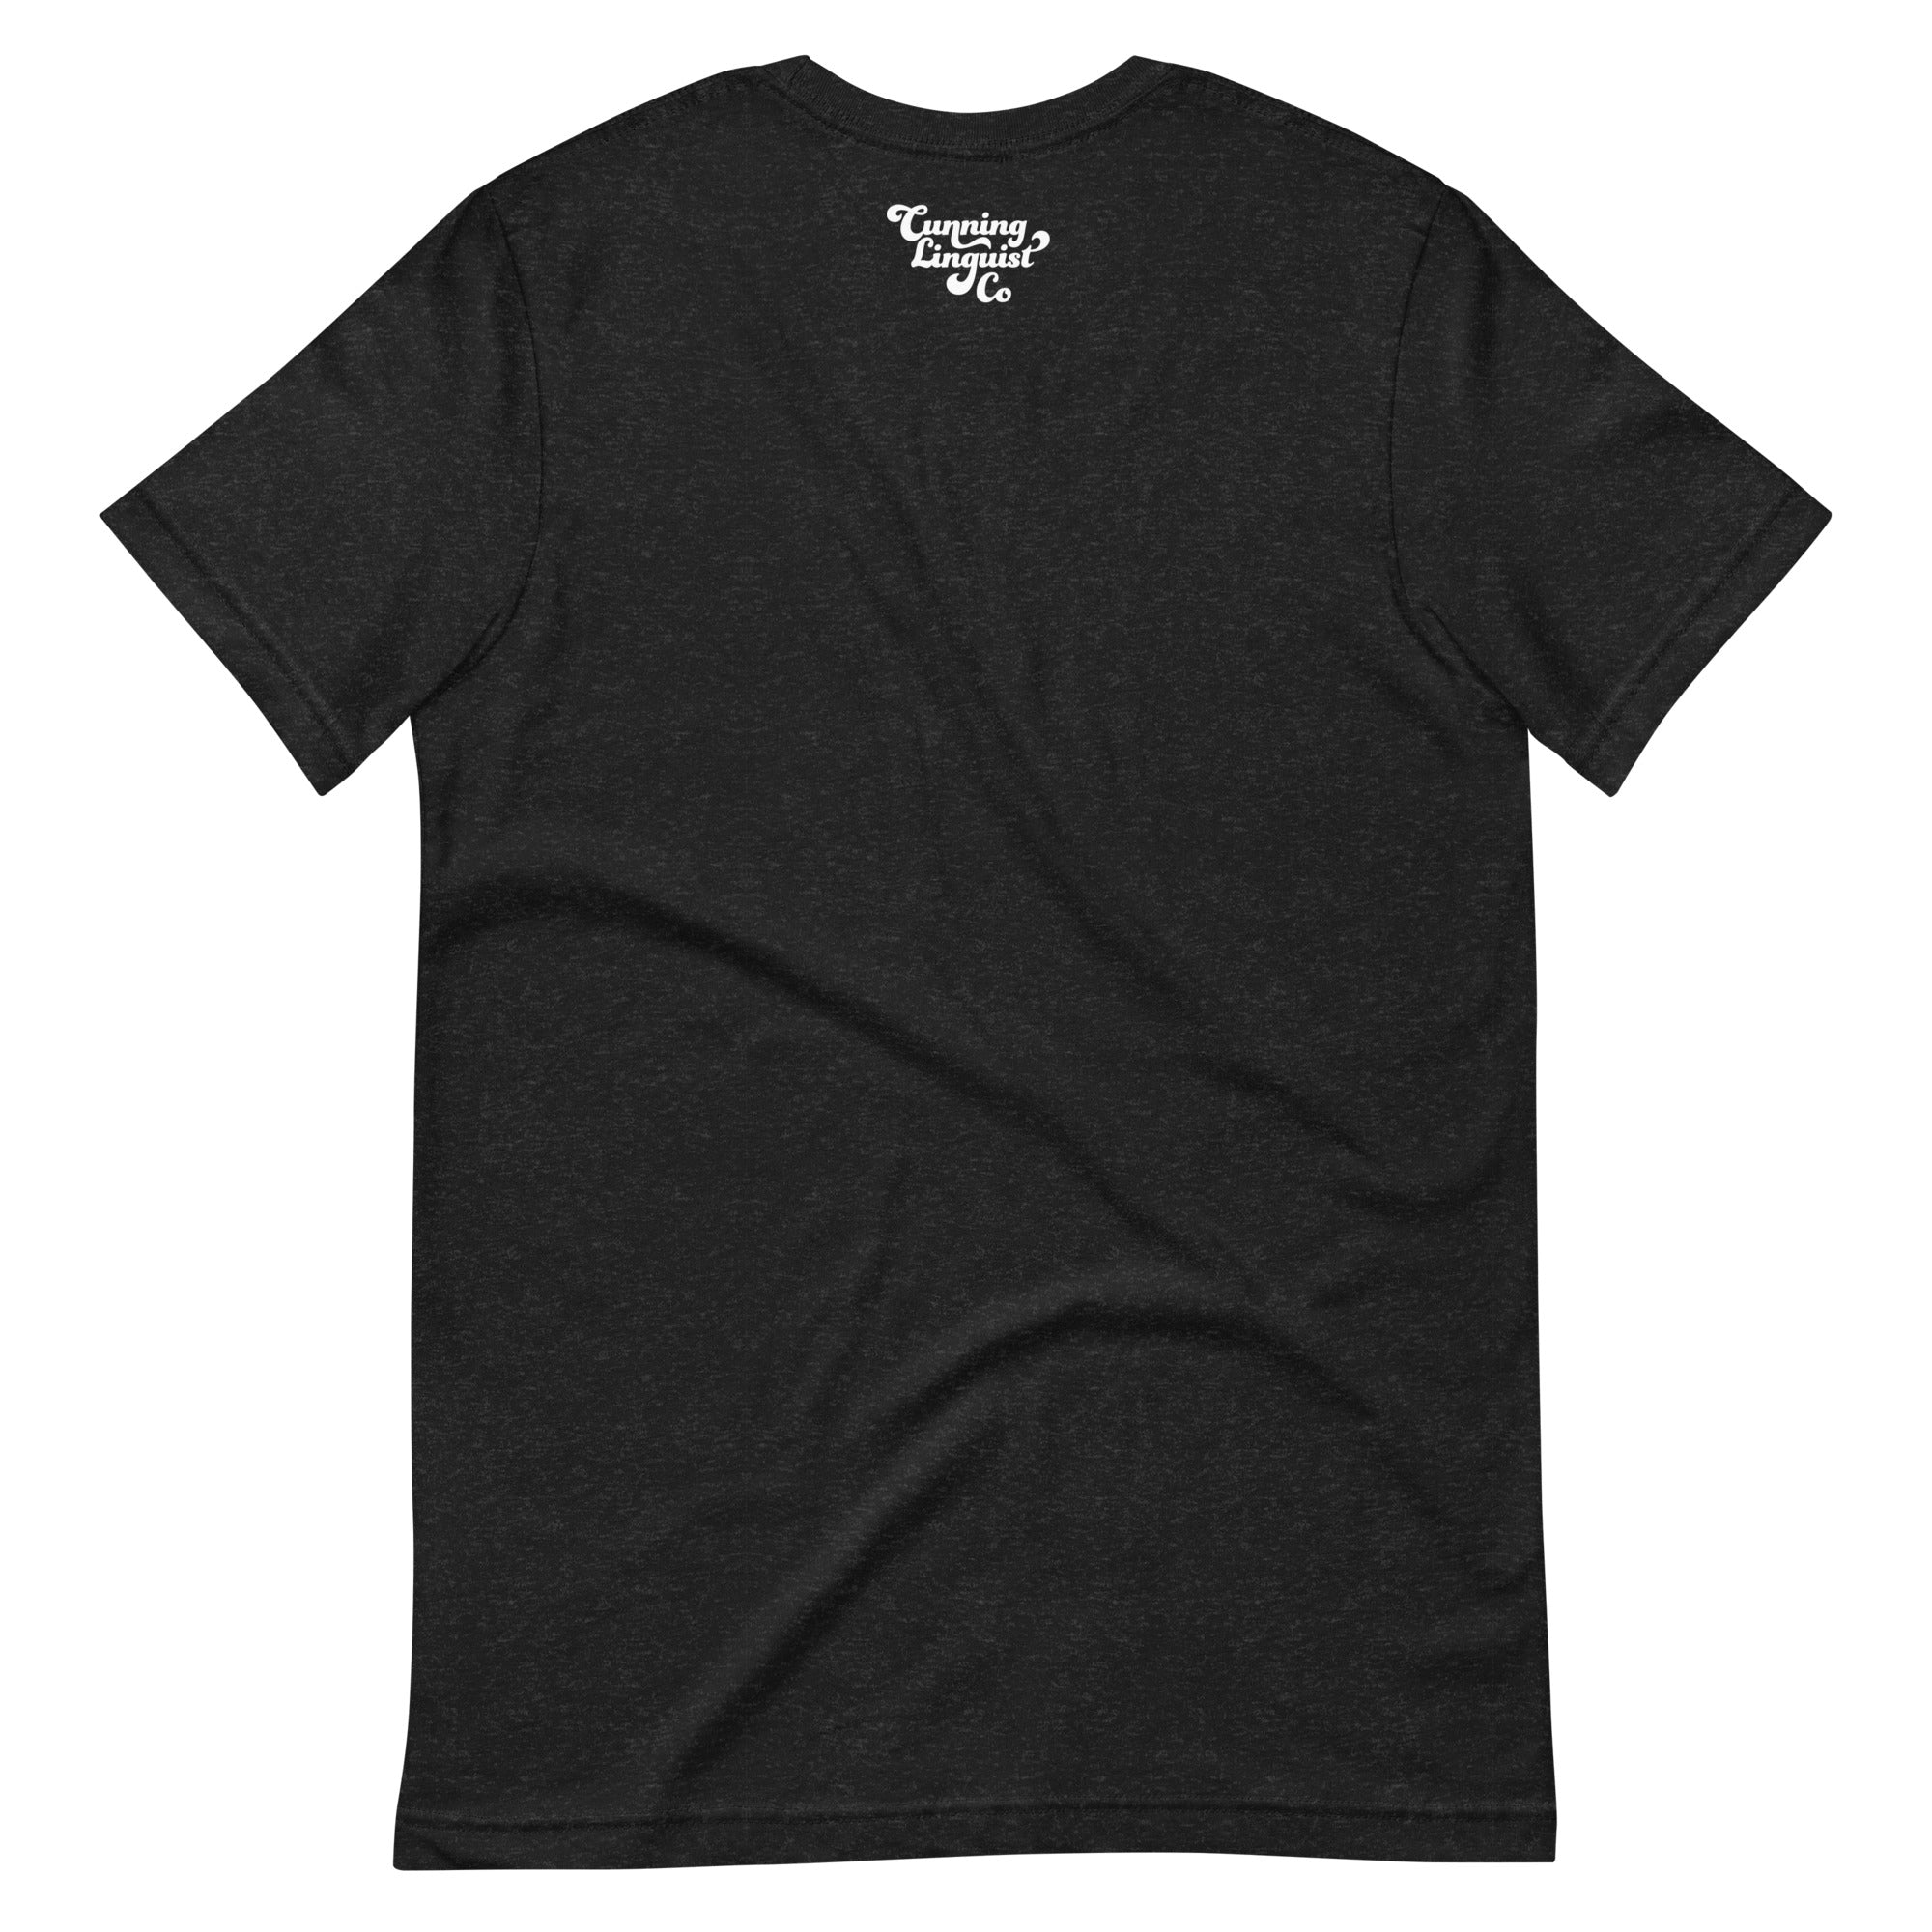 Ethical Slut short-sleeve unisex T-shirt